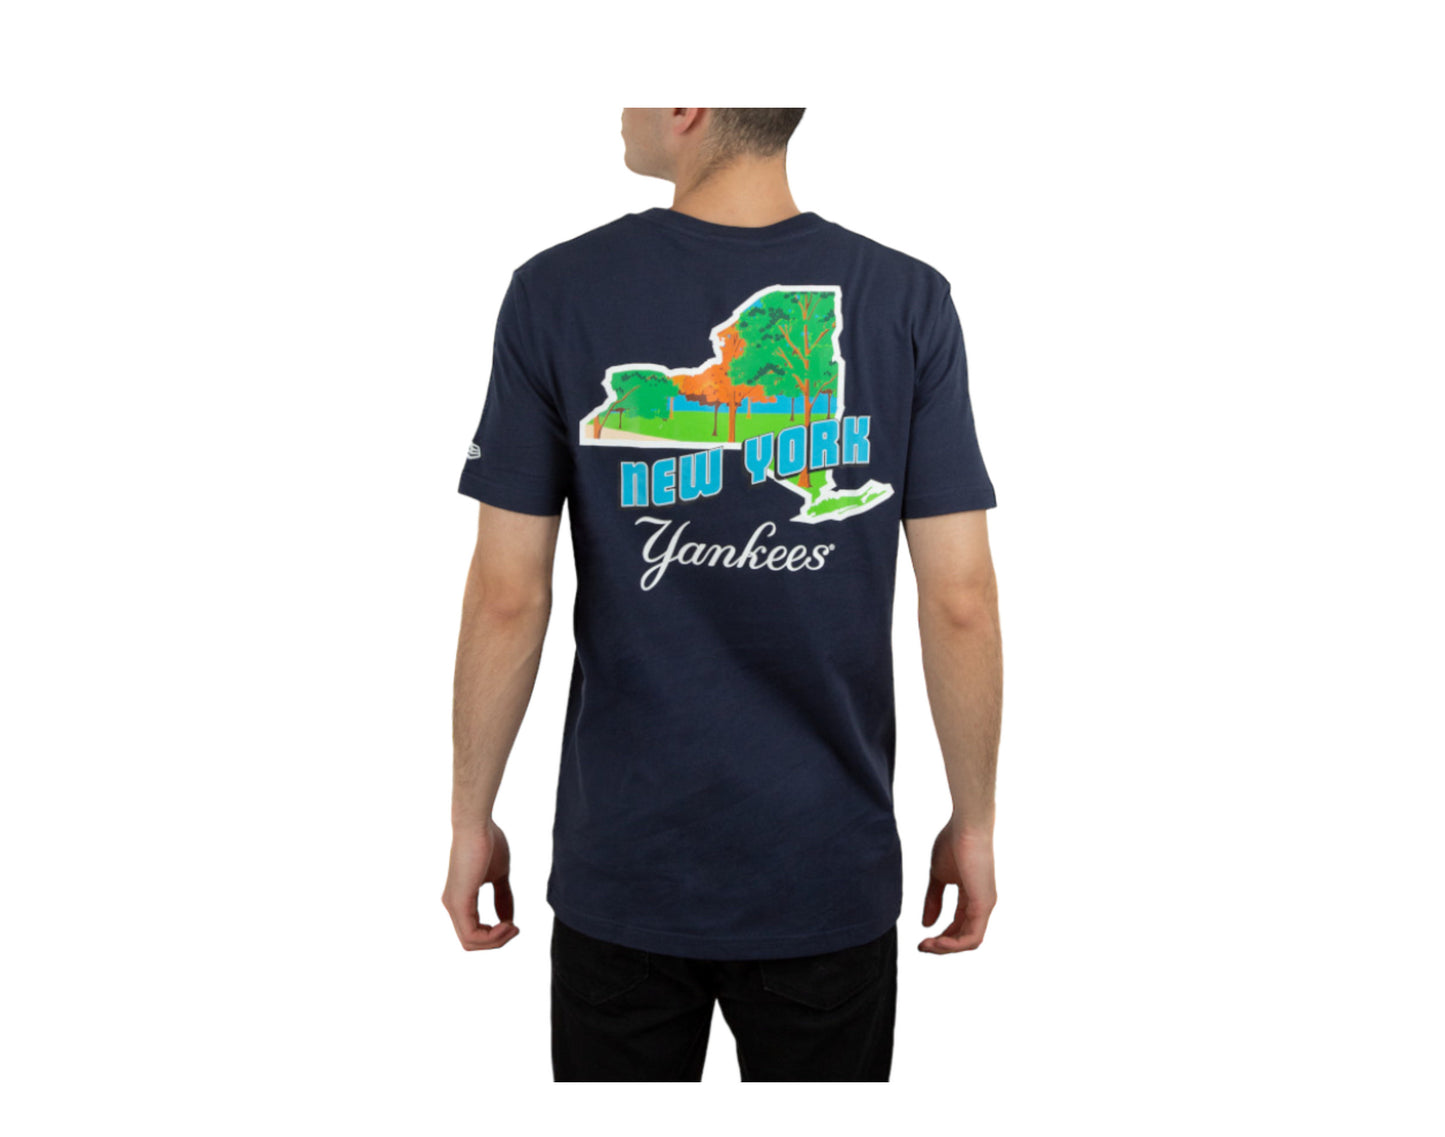 New Era MLB New York Yankees Stateview T-Shirt